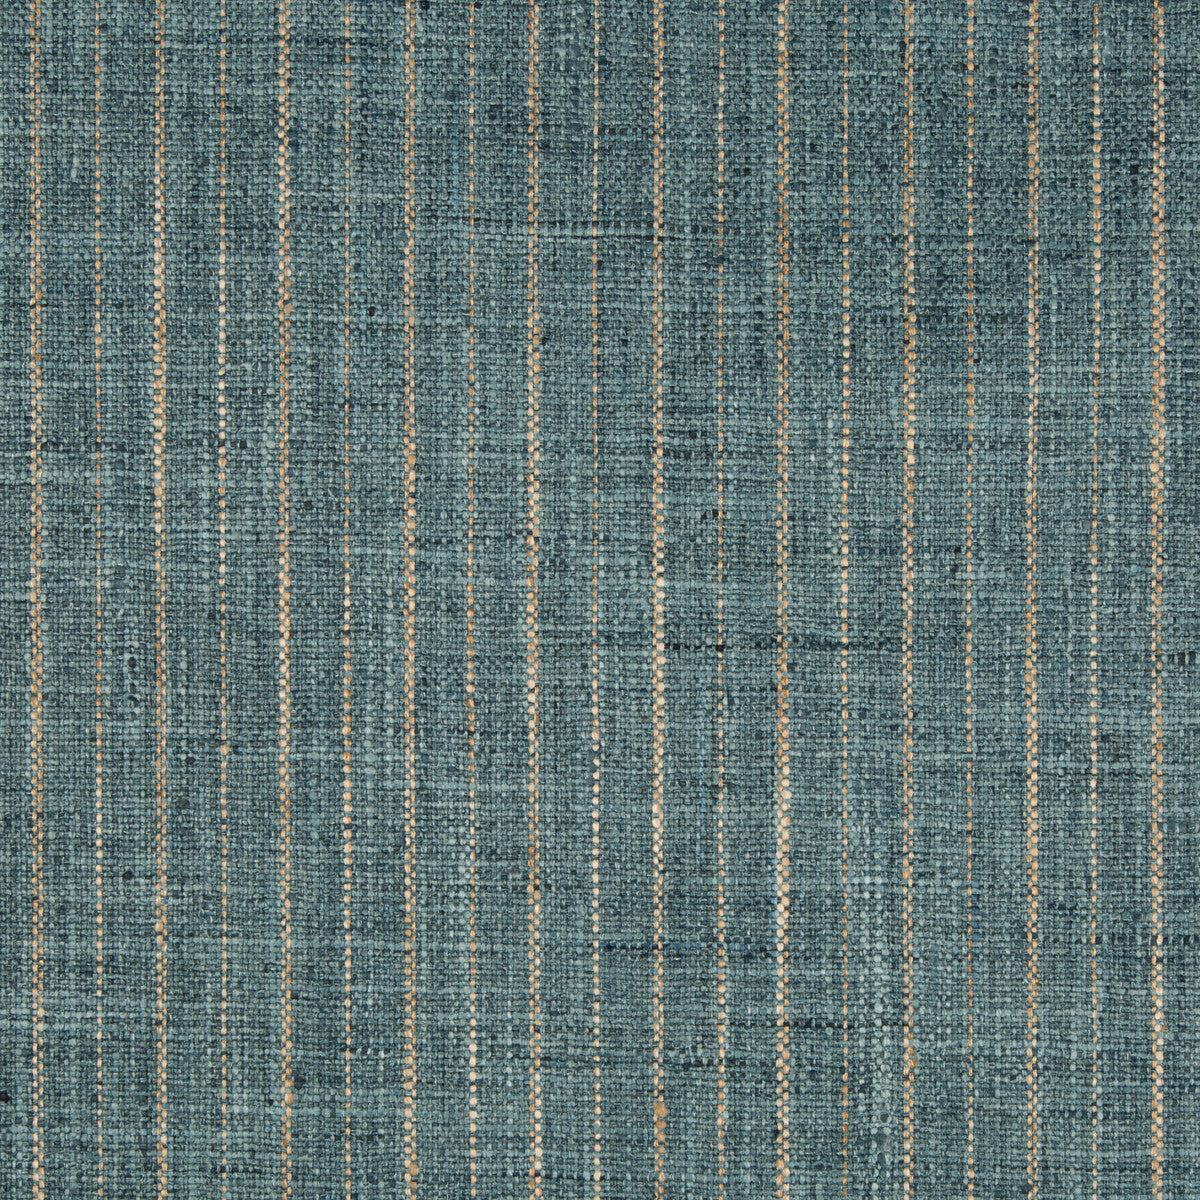 Kravet Basics fabric in 34984-35 color - pattern 34984.35.0 - by Kravet Basics